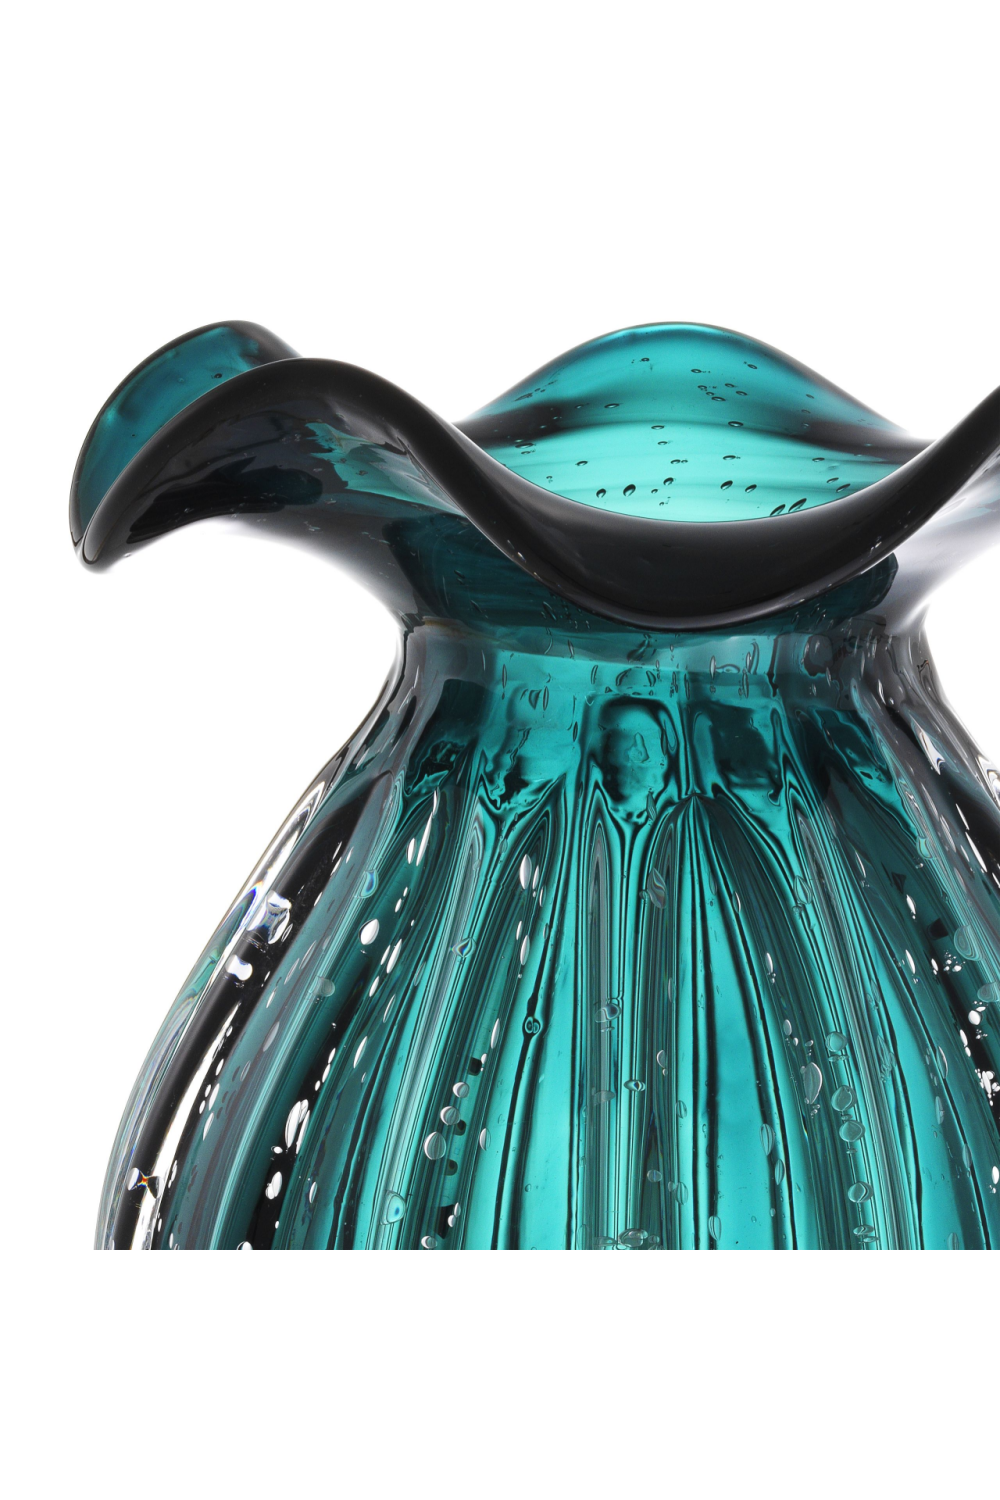 Green Vase | Eichholtz Korakia S | OROA